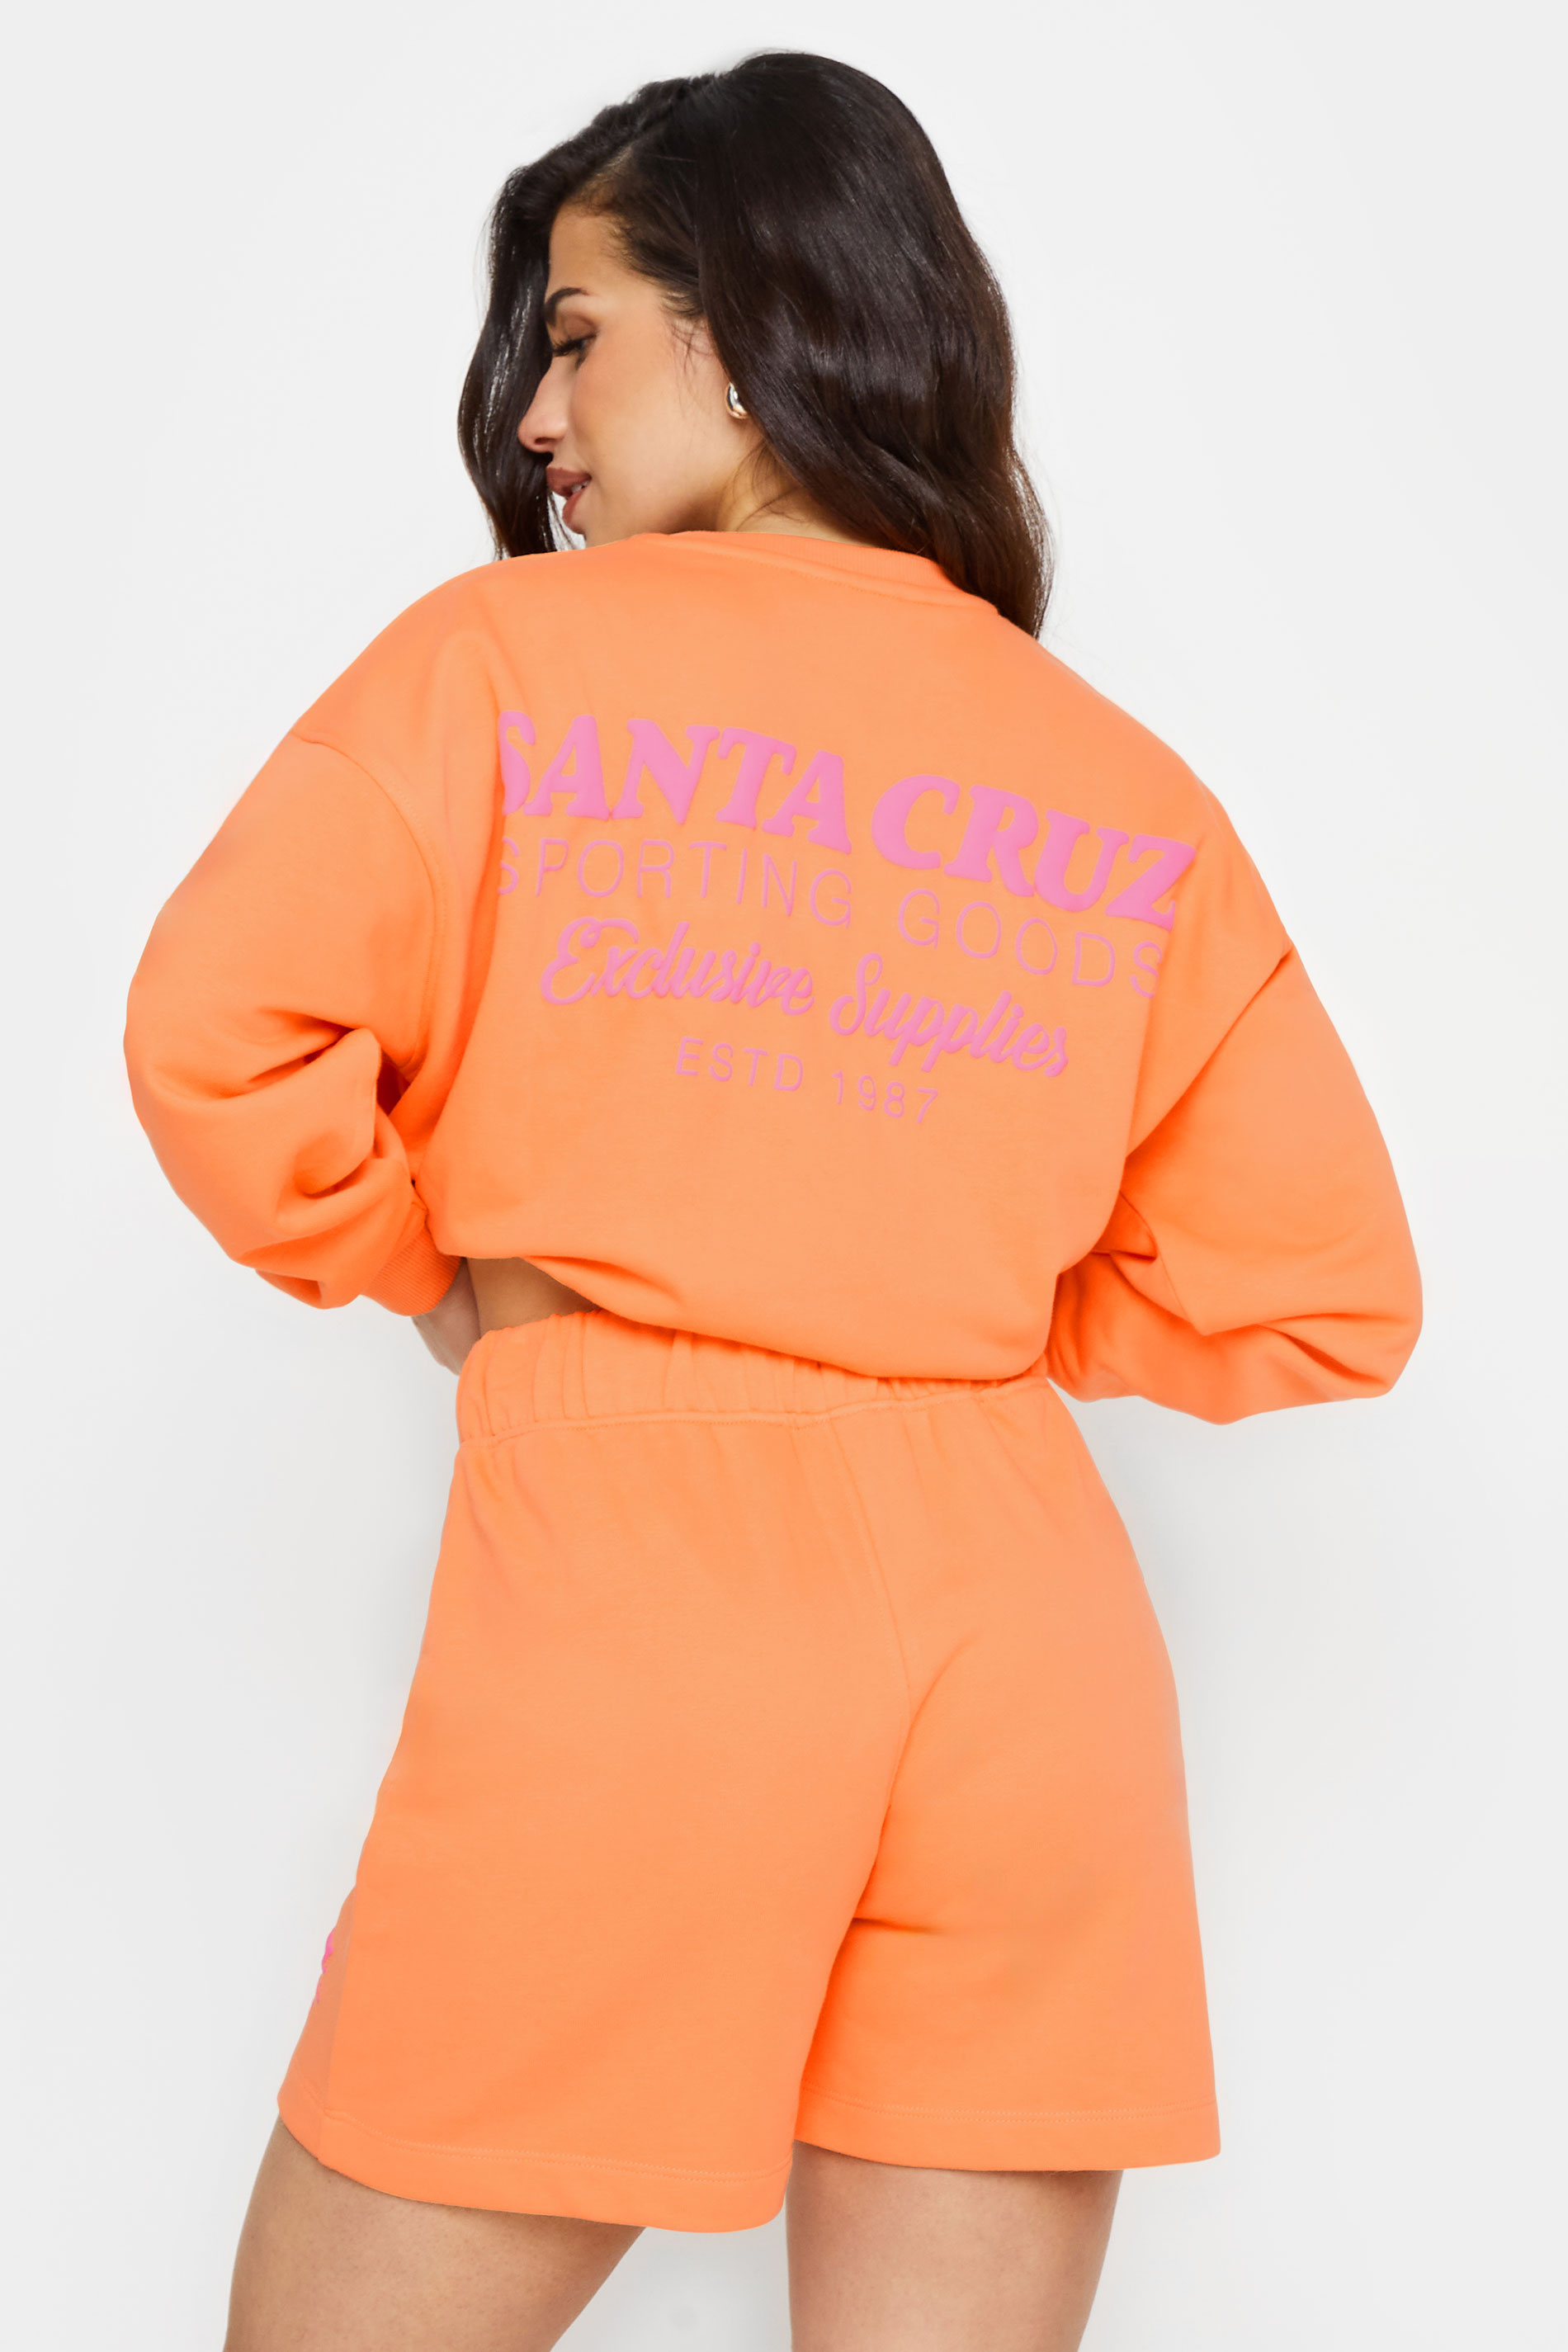 PixieGirl Petite Women's Orange 'Santa Cruz' Slogan Jogger Shorts | PixieGirl 3